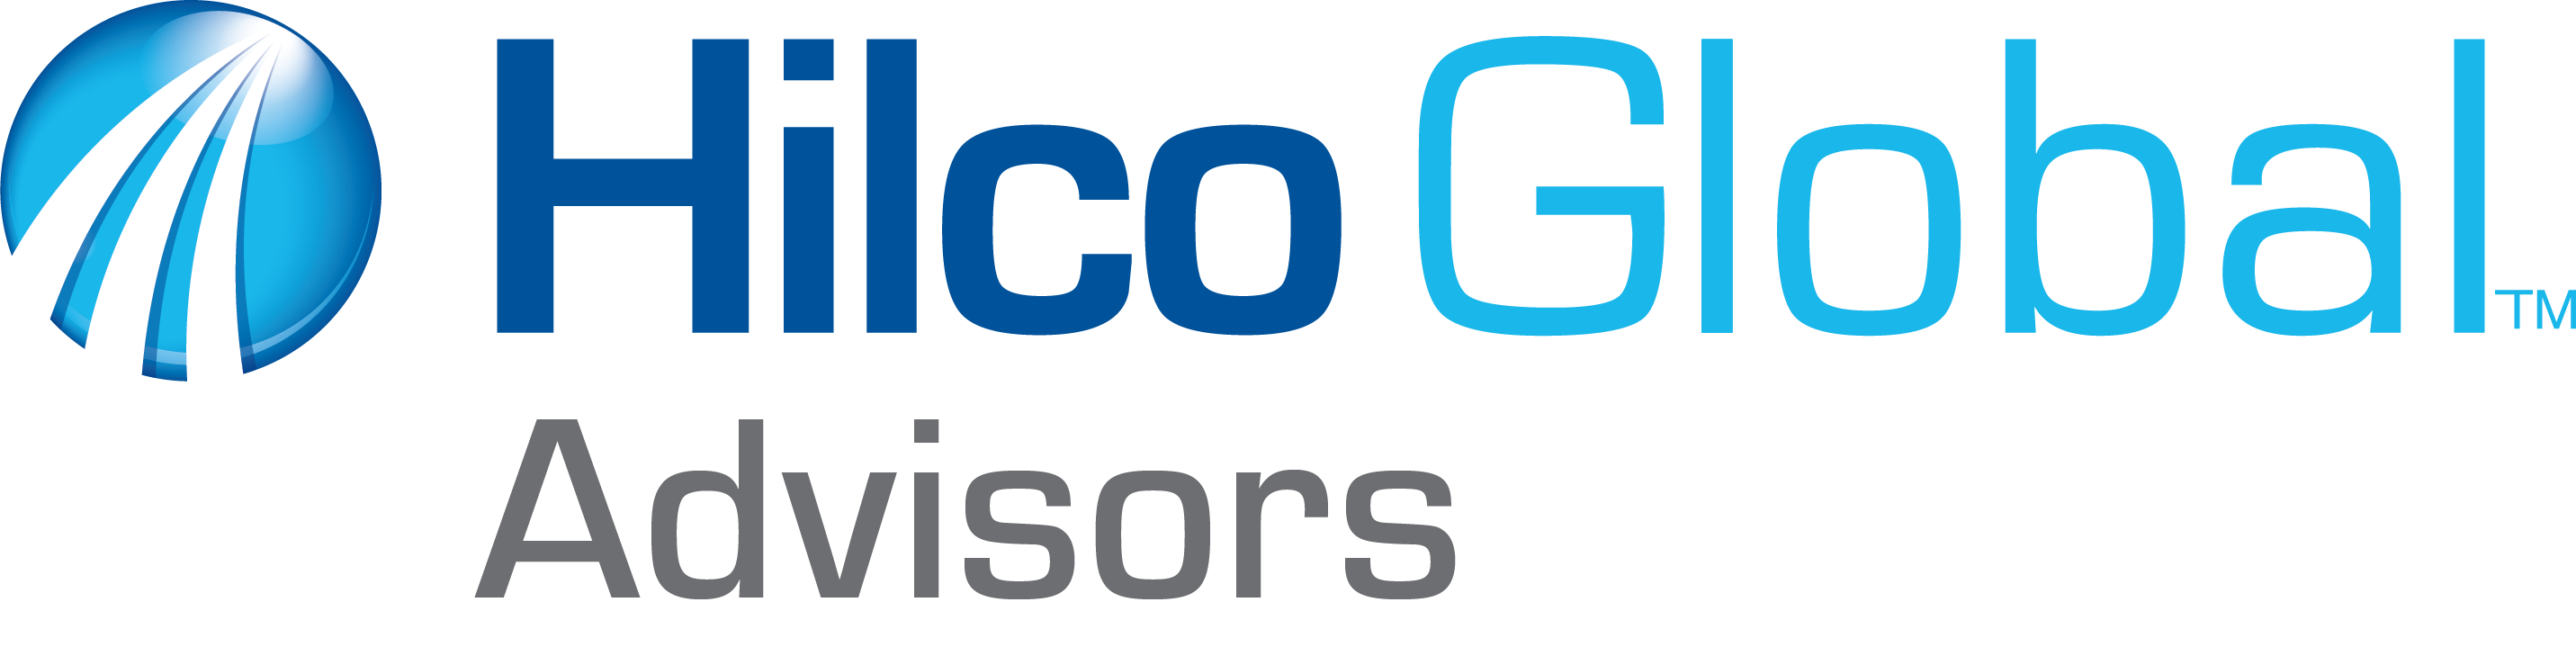 Hilco Global Advisors 4C